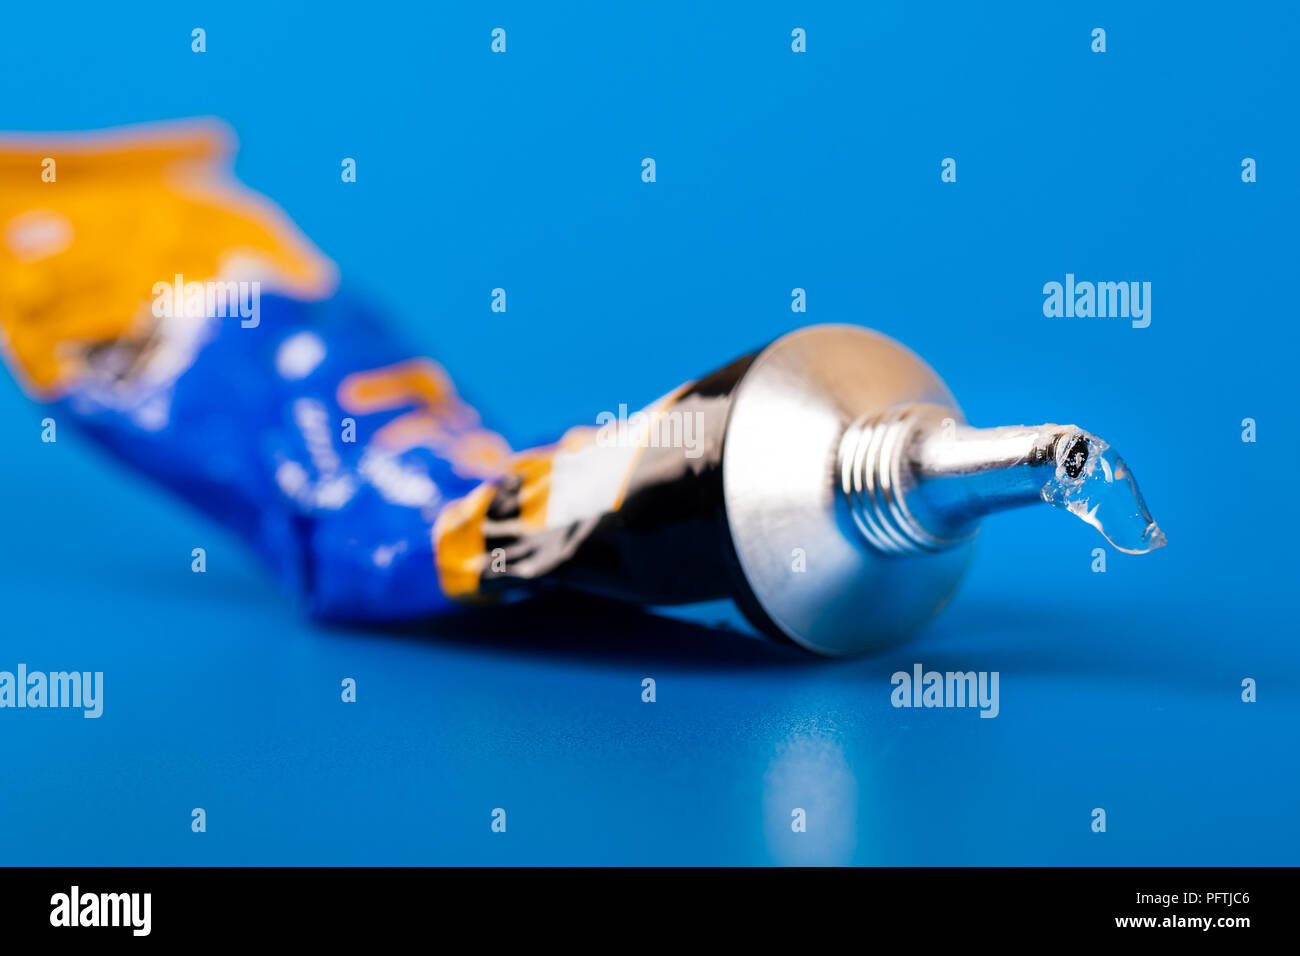 super glue tube on blue background Stock Photo